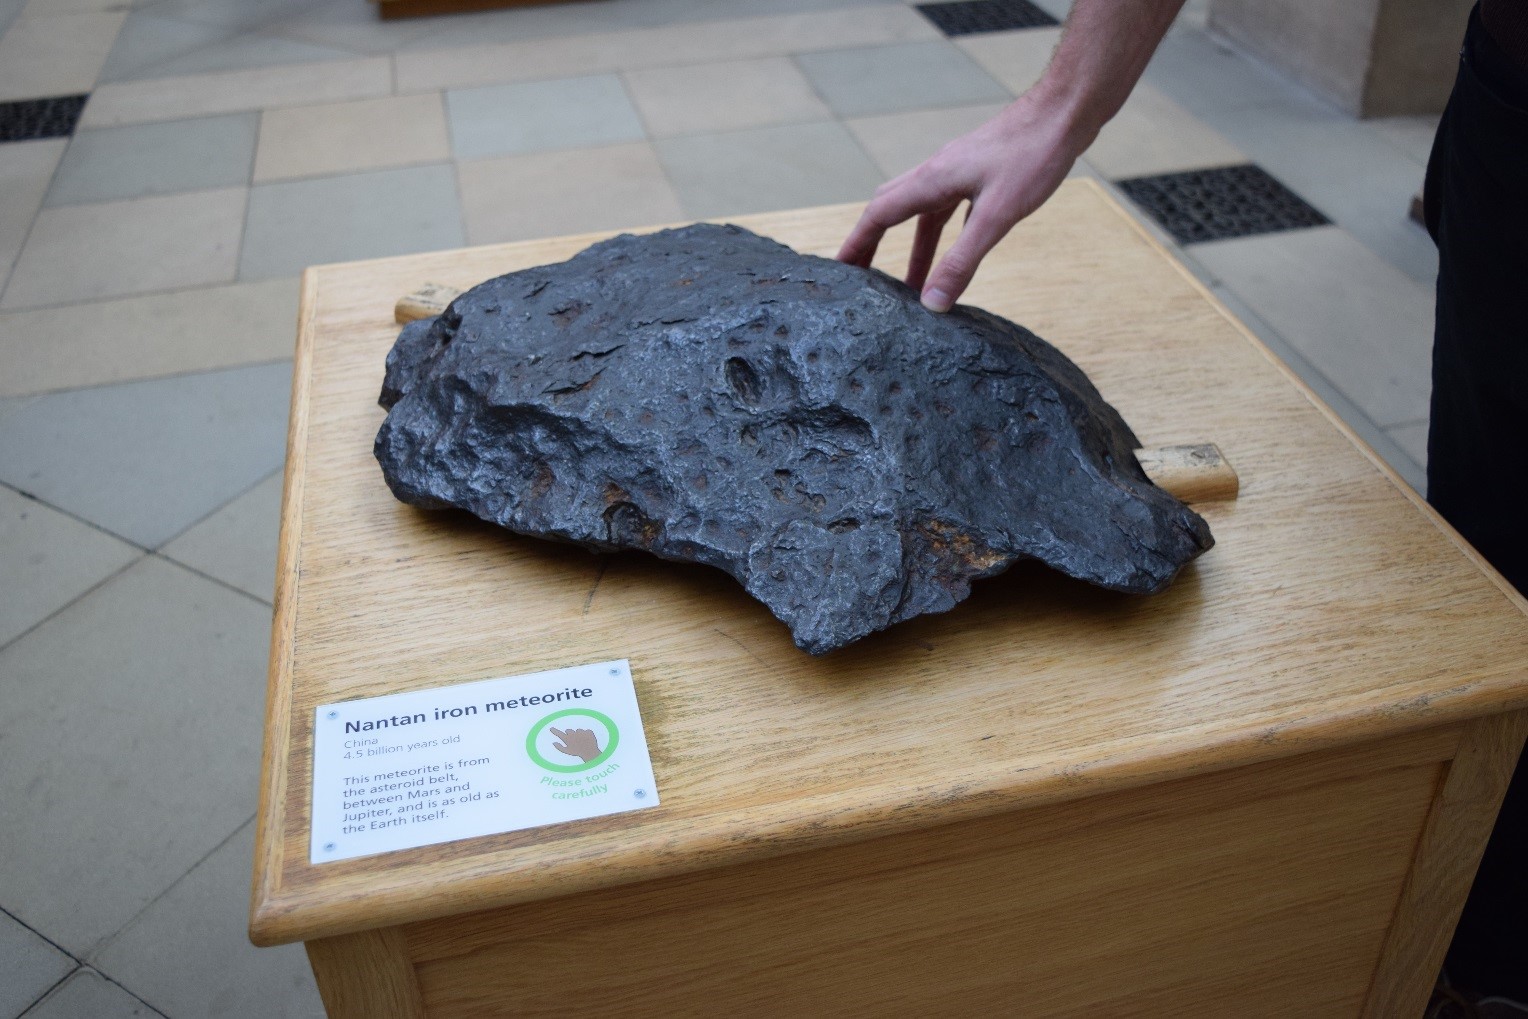 Nantan Meteorite in the Oxford University Museum of Natural History